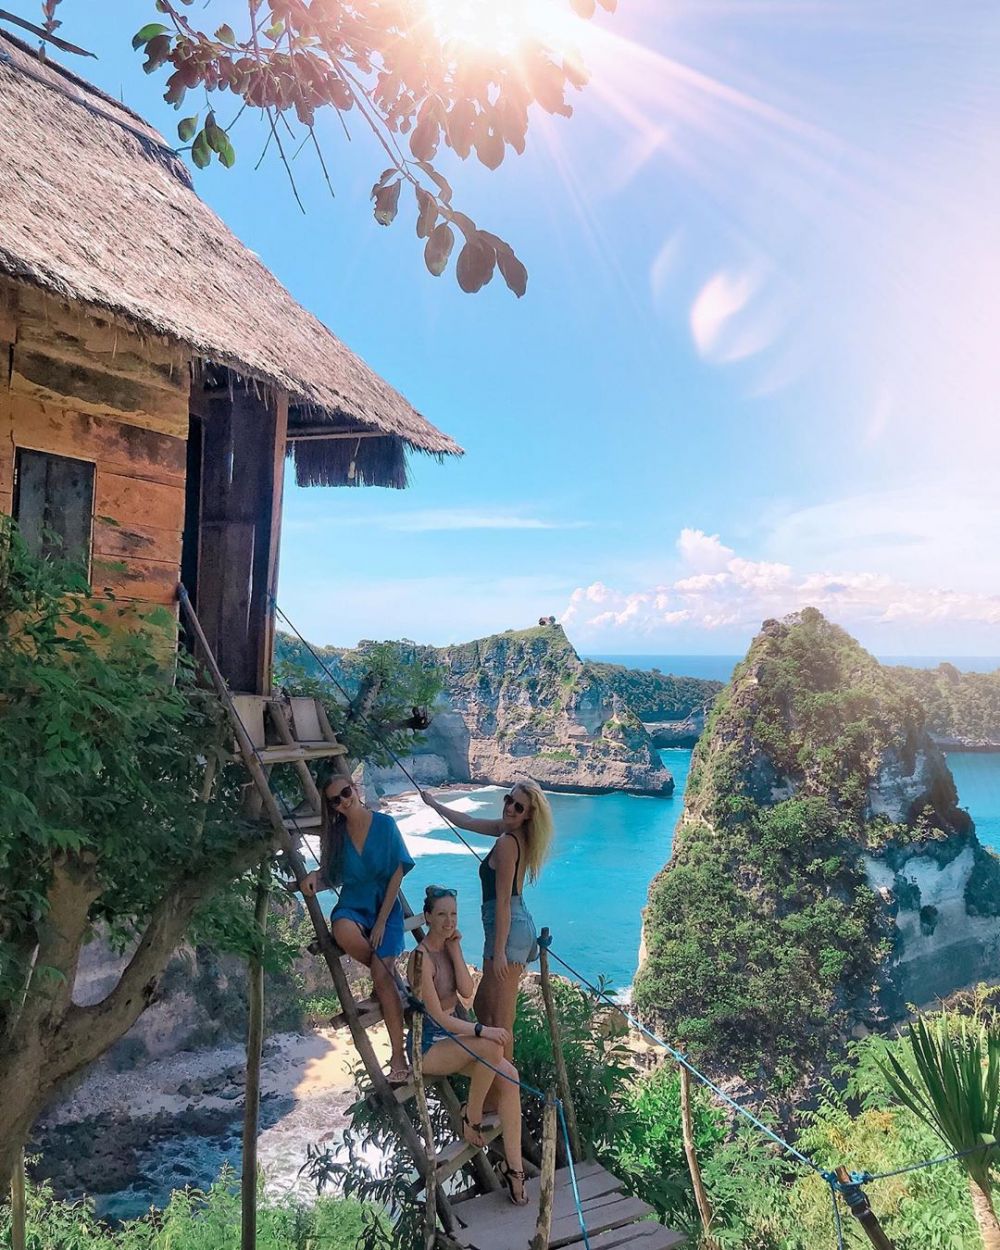 8 Rekomendasi Paket Wisata ke Nusa Penida Bali, Lagi Promo dan Murah